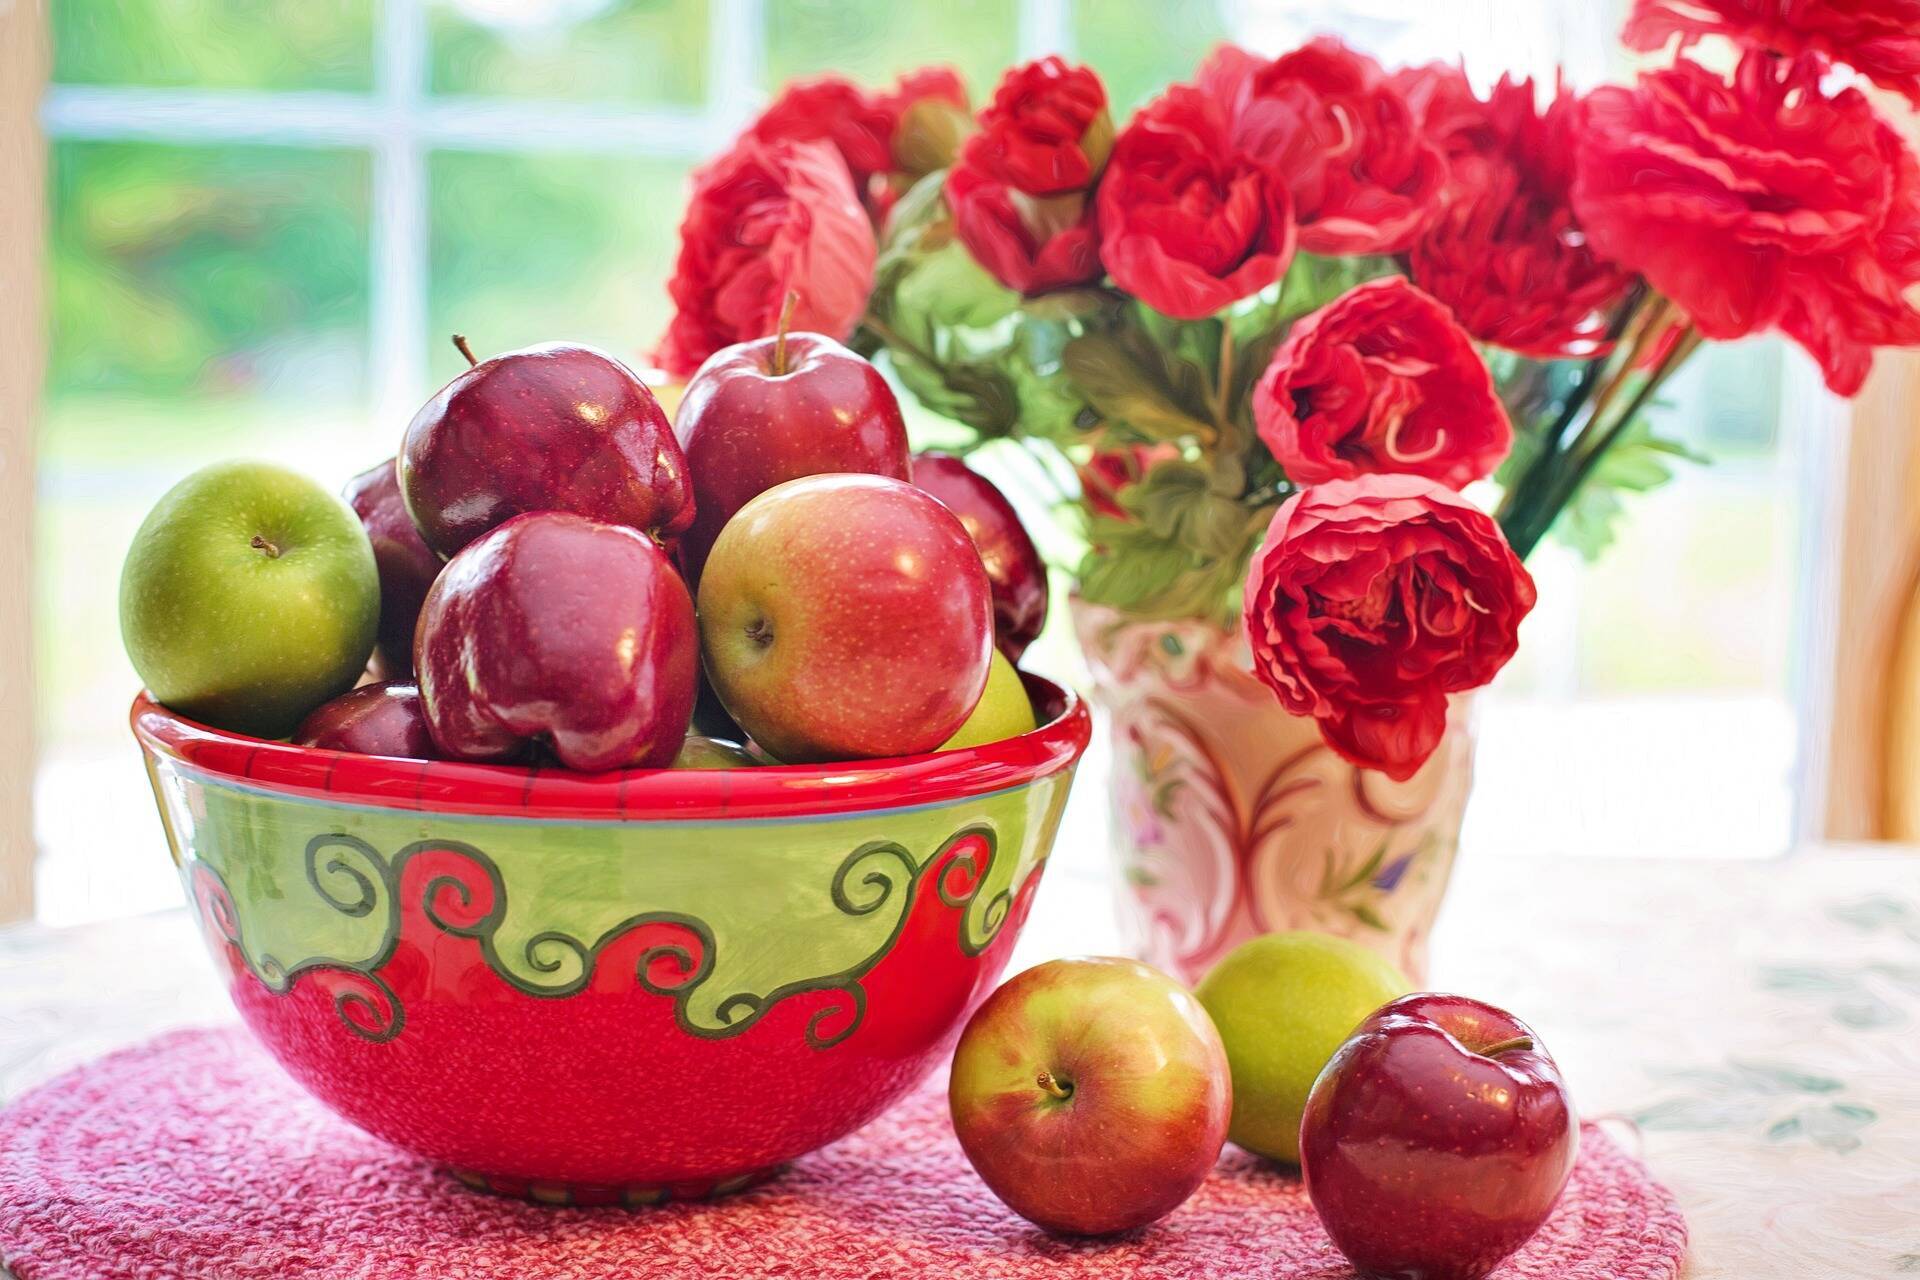 Яблучний Спас відзначається 19 серпня і 2020 року припадає на середу.